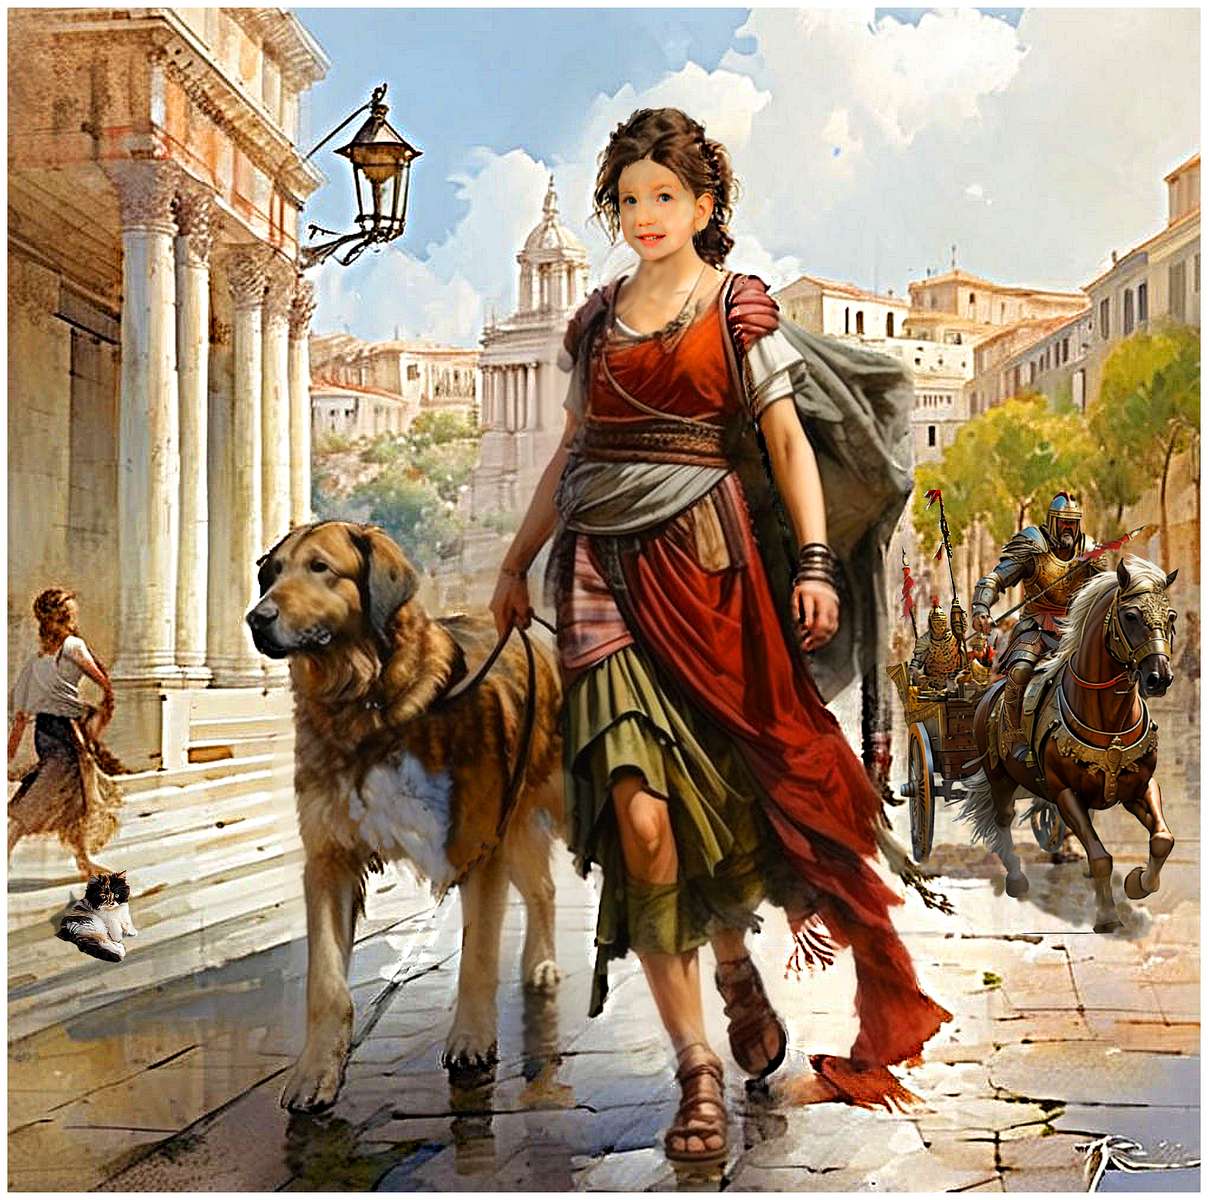 Canis sorveglia la sua amante durante una passeggiata a Roma. puzzle online